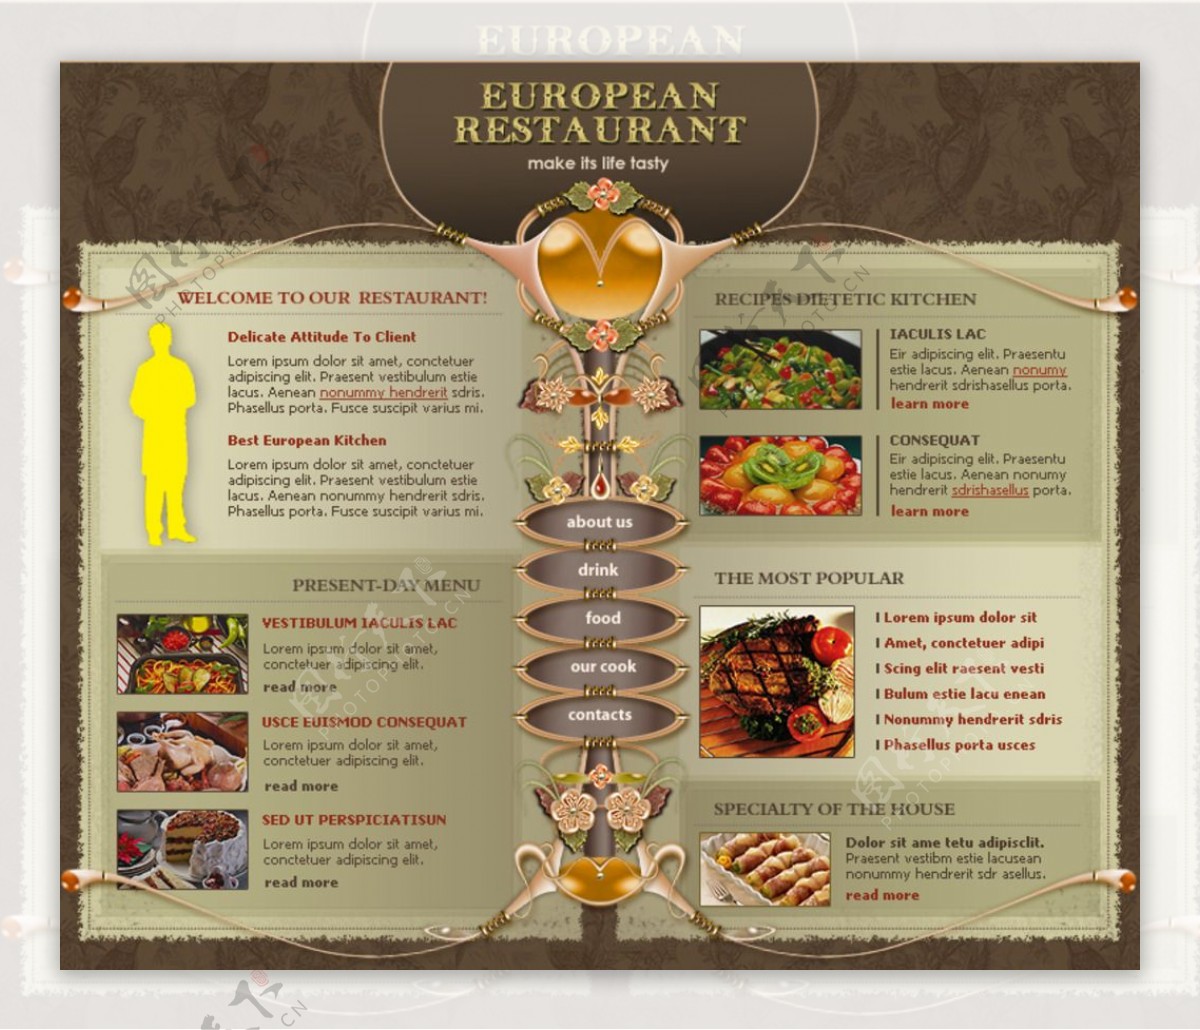 饮食餐饮站英文模板图片